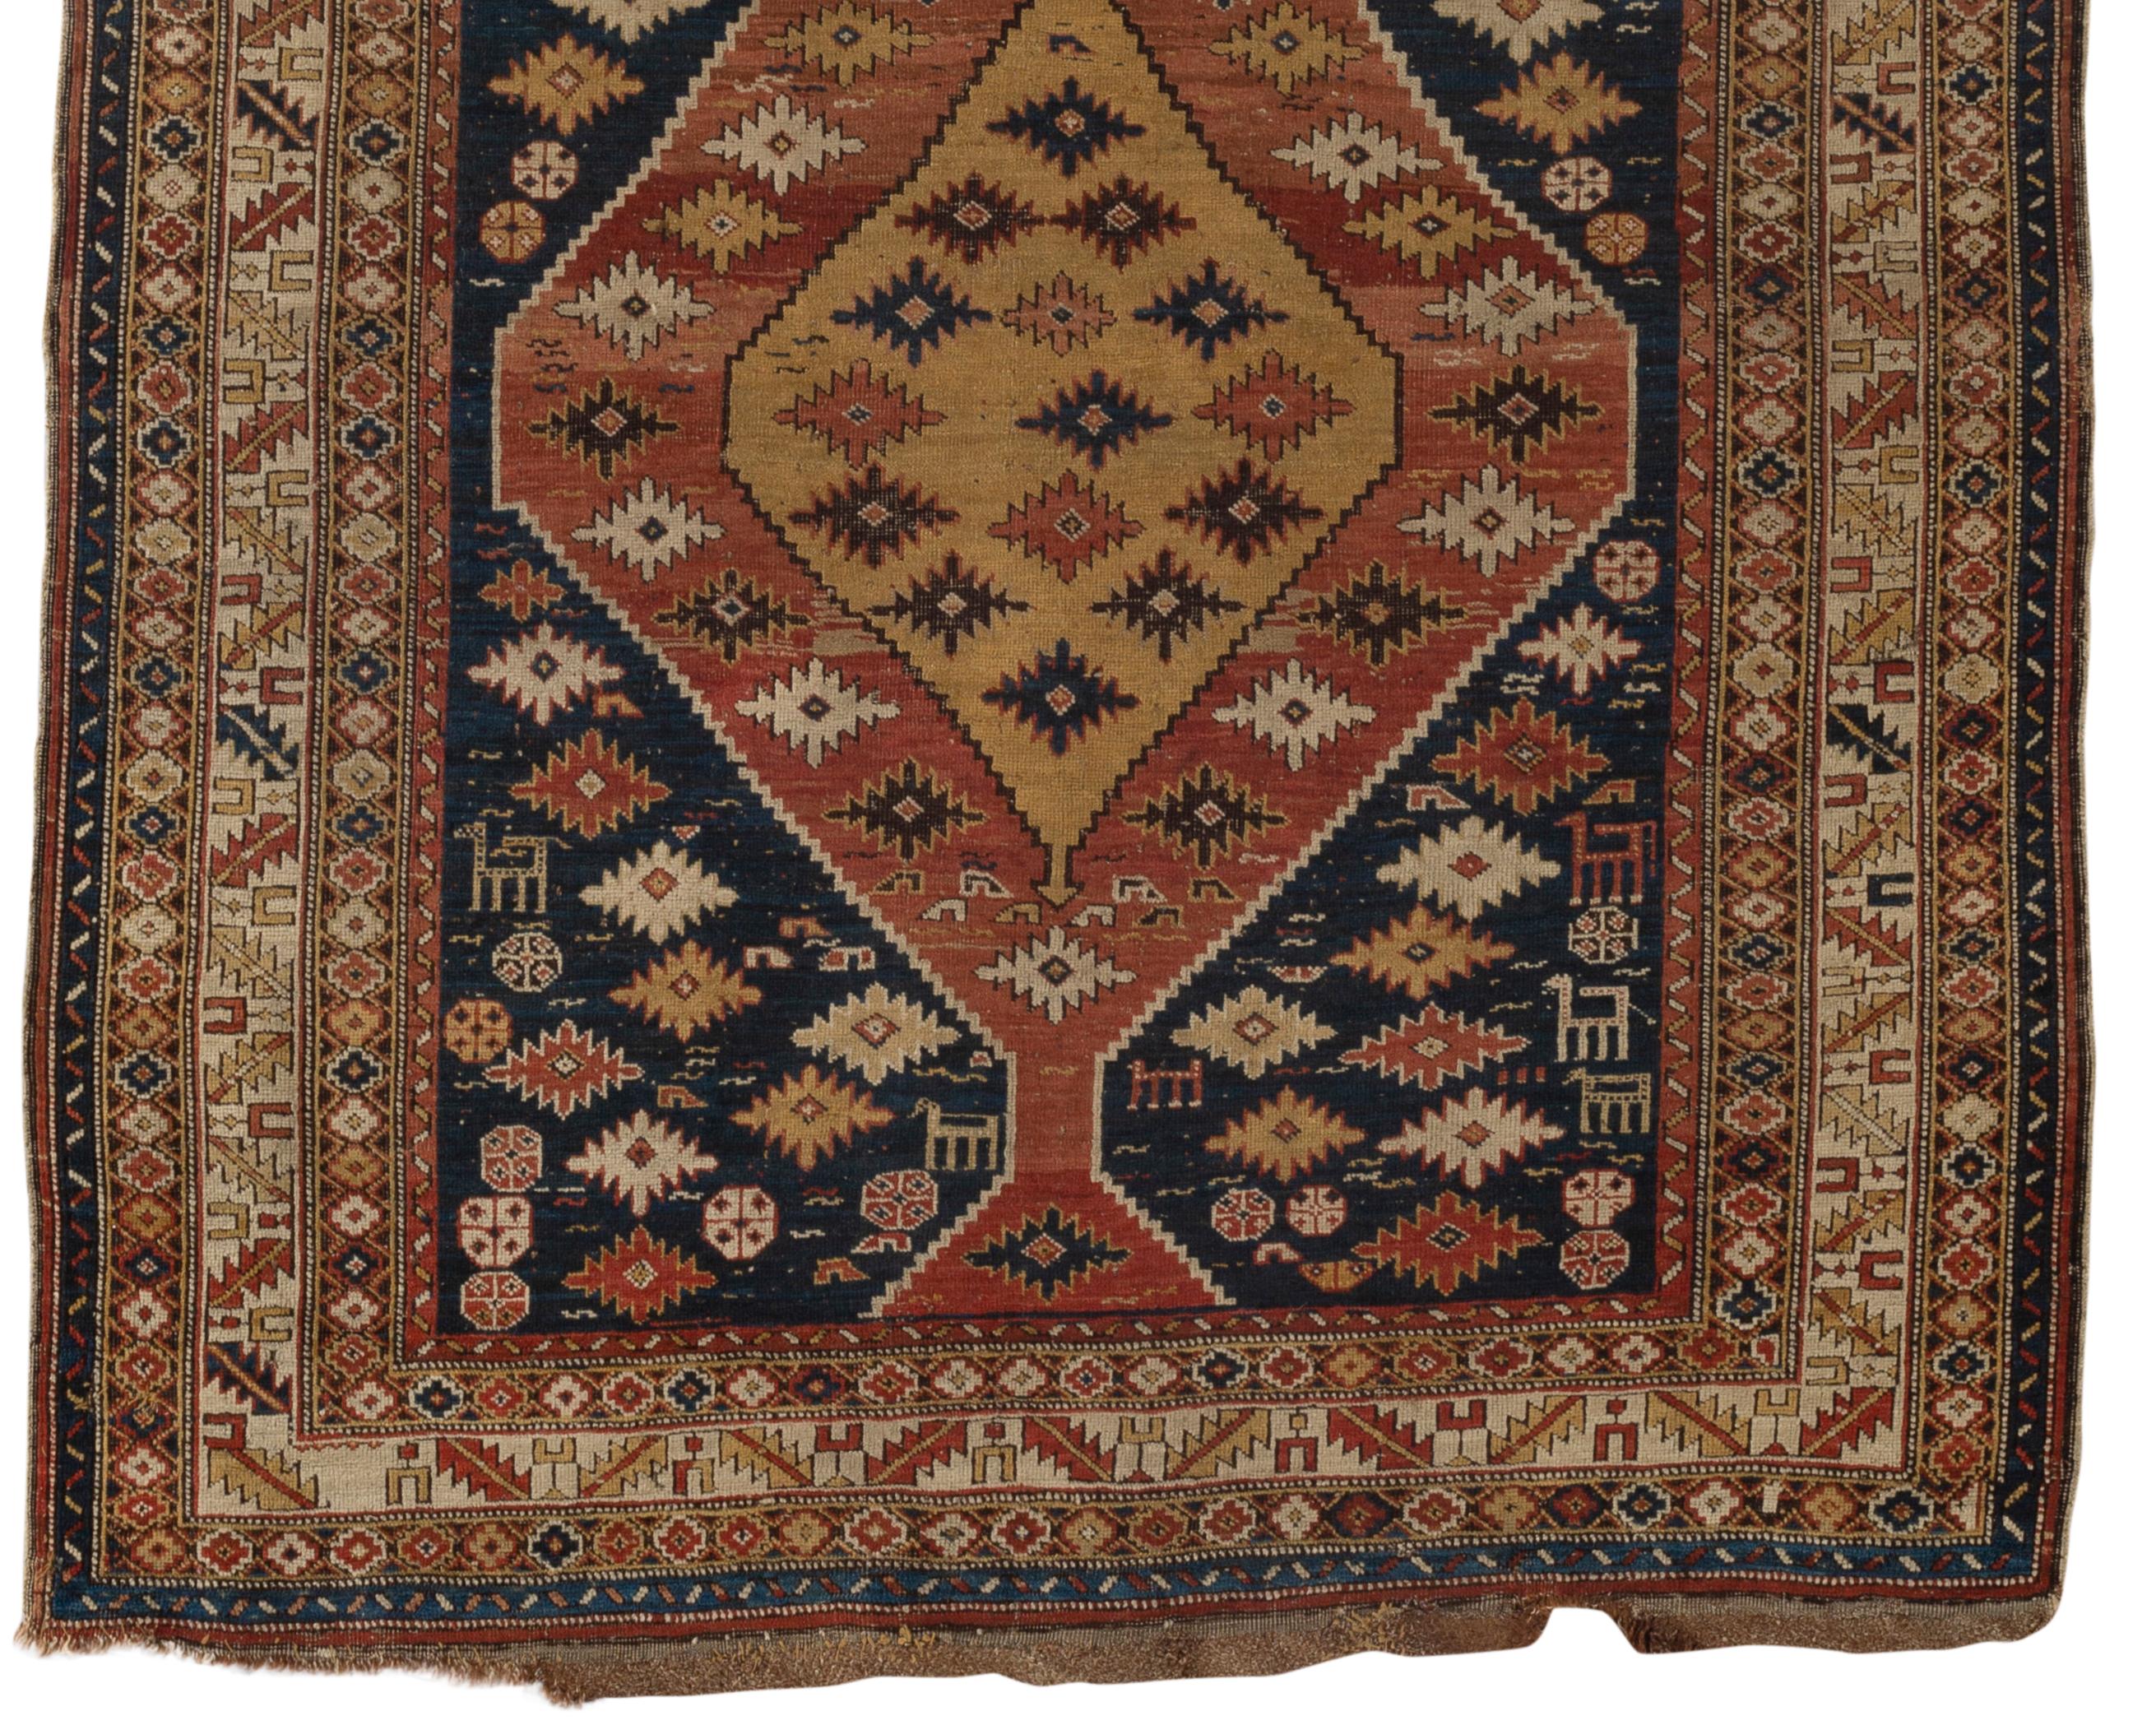 Antiker kaukasischer Dagestan-Teppich, um 1880. Ein interessanter quadratischer Teppich mit floralen Mustern und einigen verstreuten Tierfiguren, die in das Stück eingewebt sind, umgeben von den traditionellen kaukasischen Mehrfachborten. Dagestan